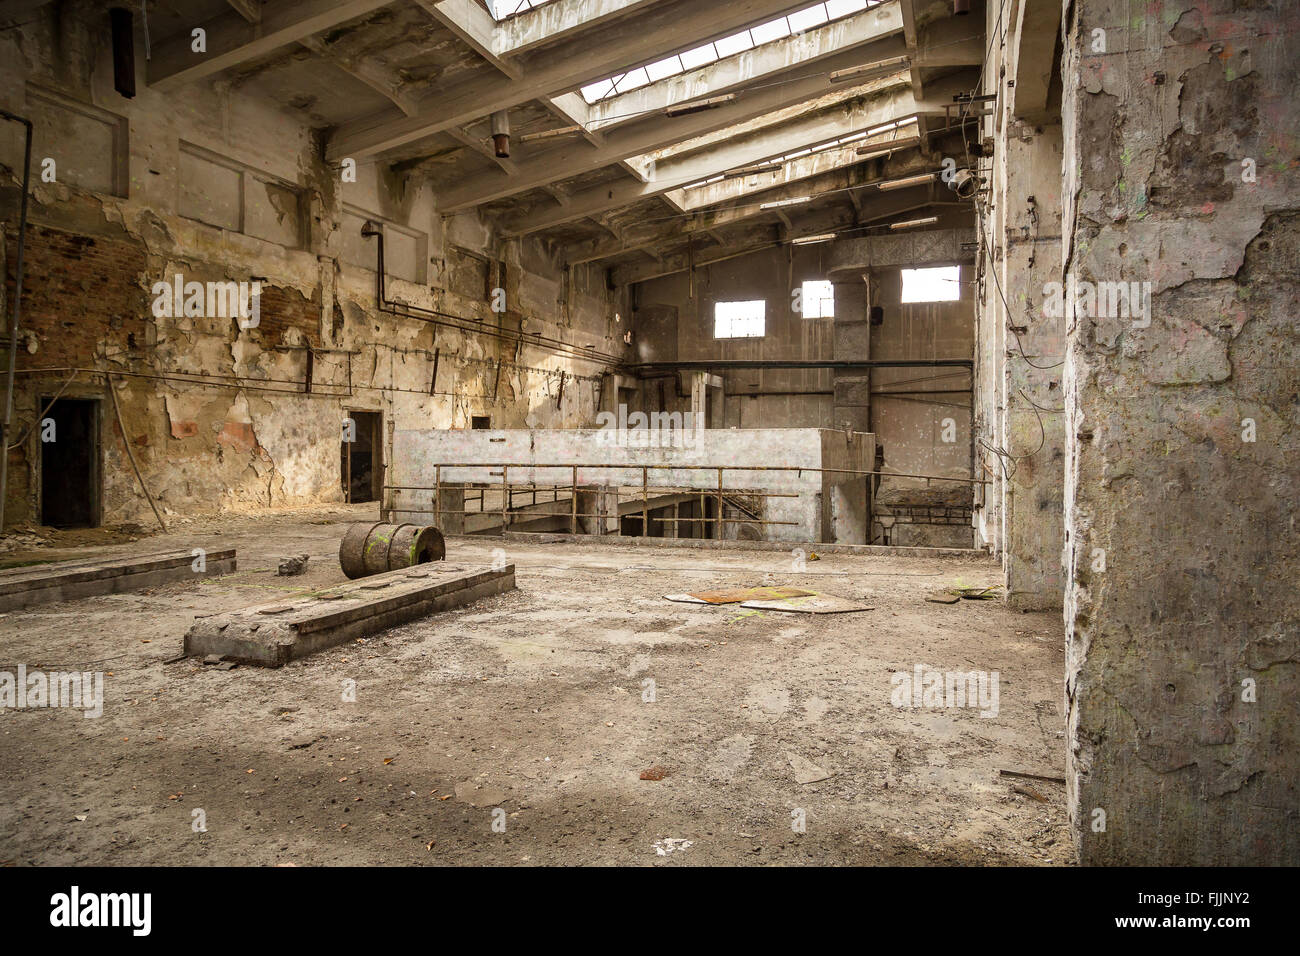 Abbandonato industrial interior Foto Stock